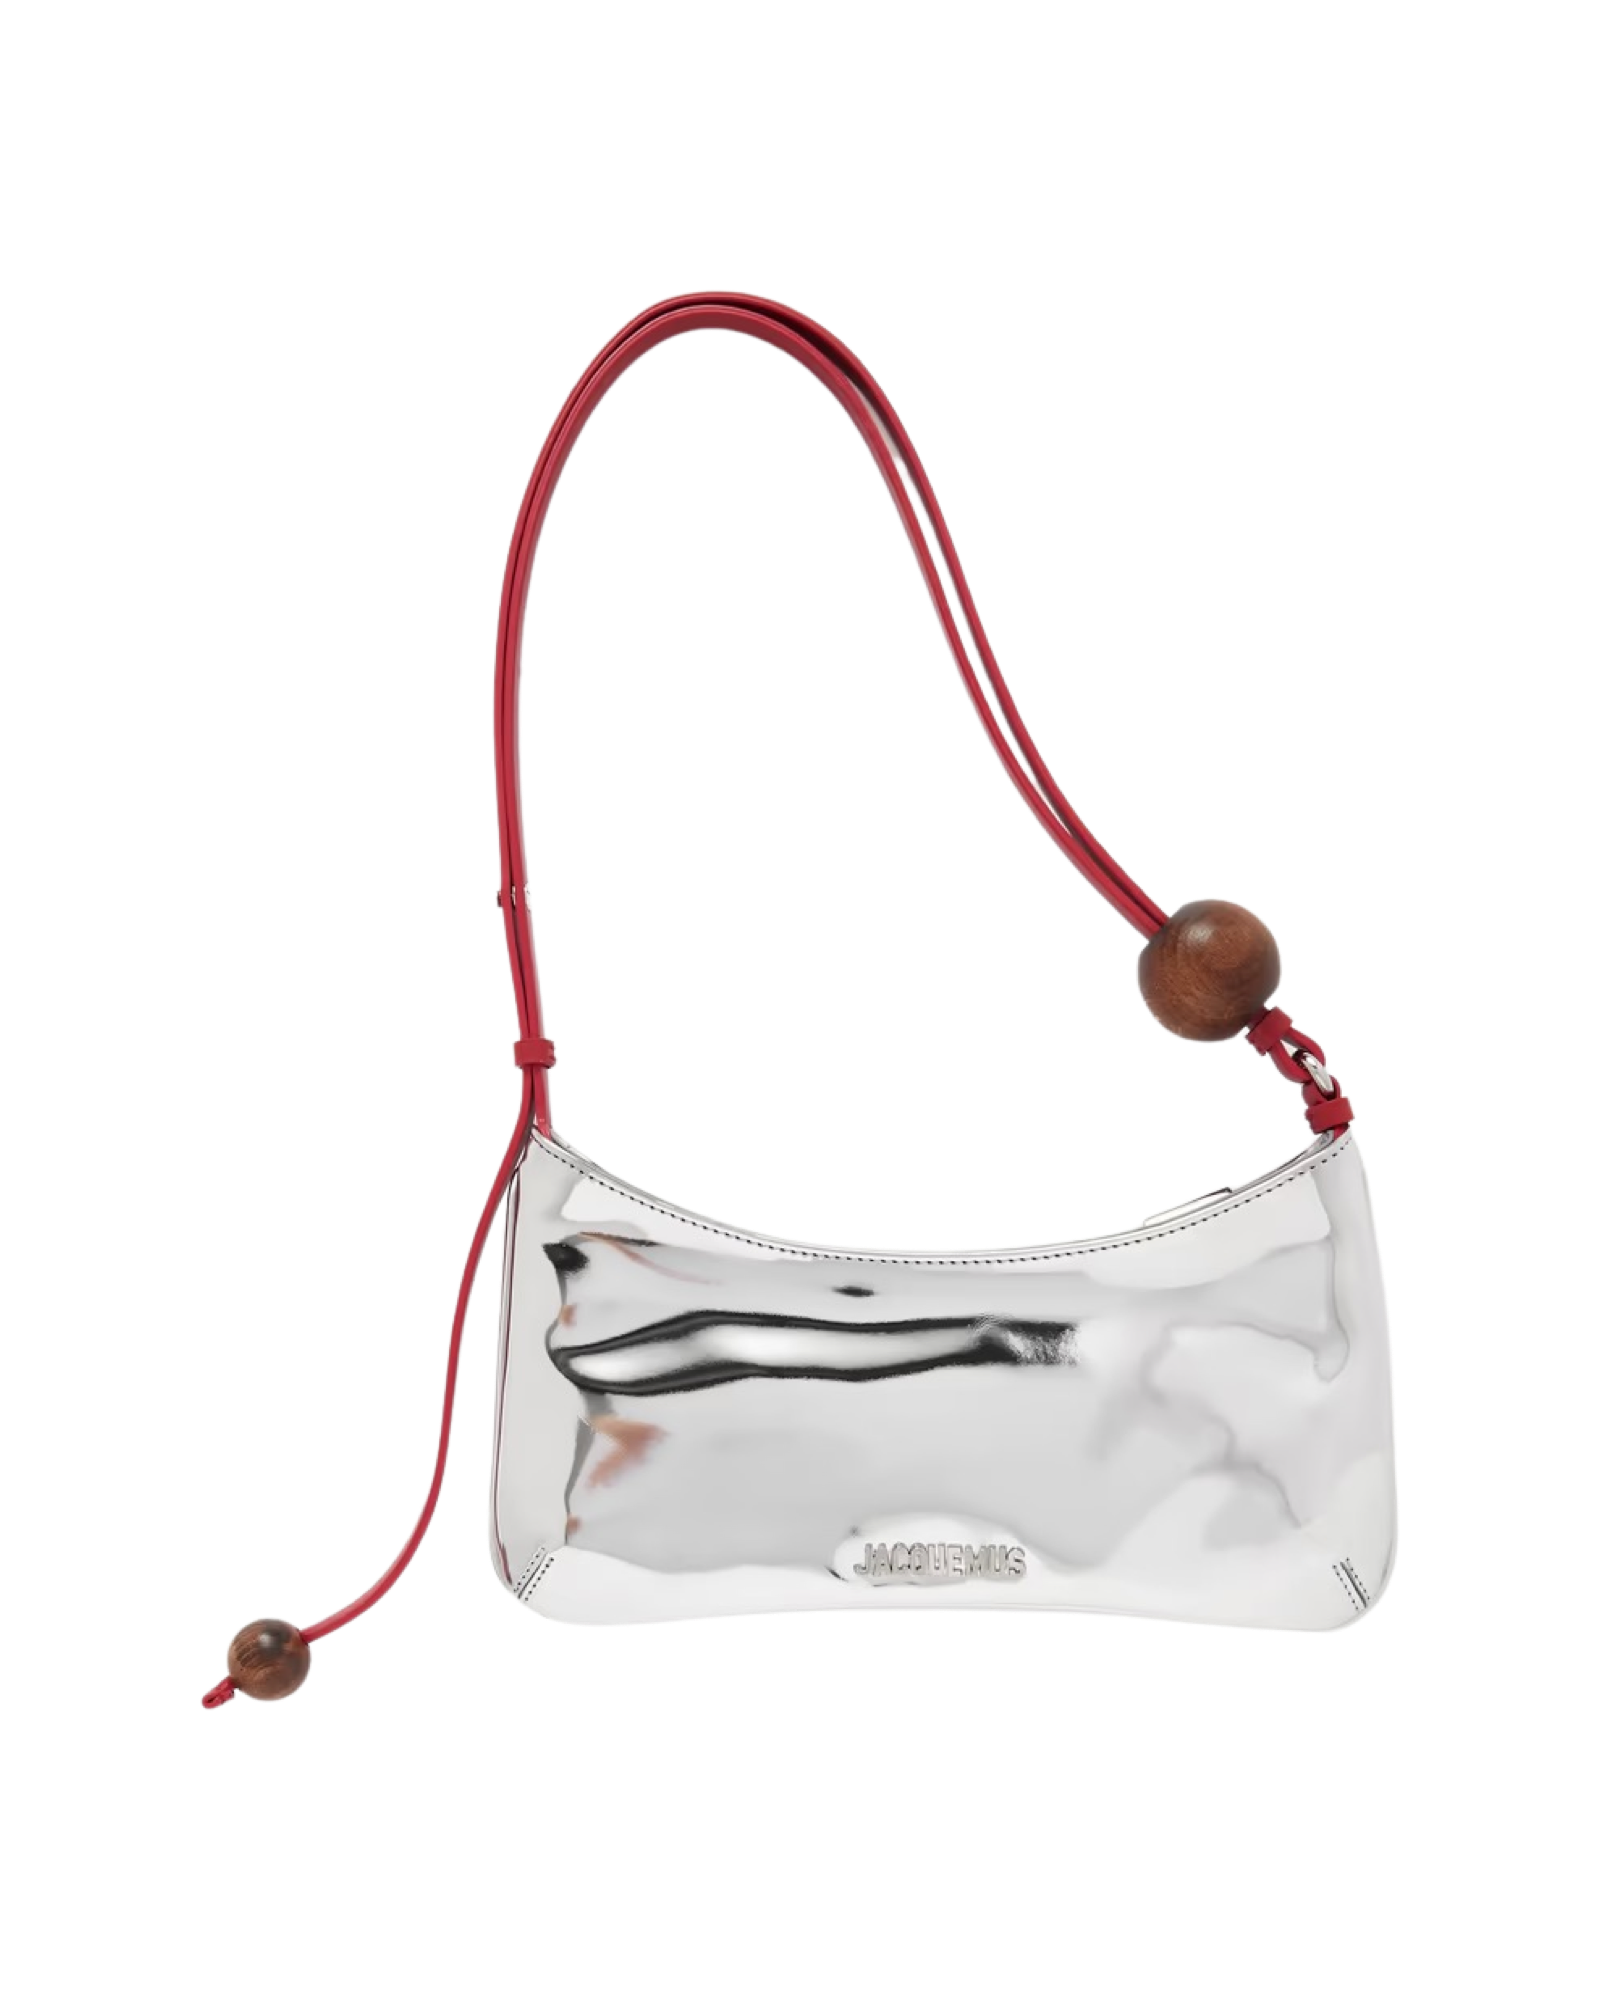 Le Bisou Perle embellished mirrored-leather shoulder bag